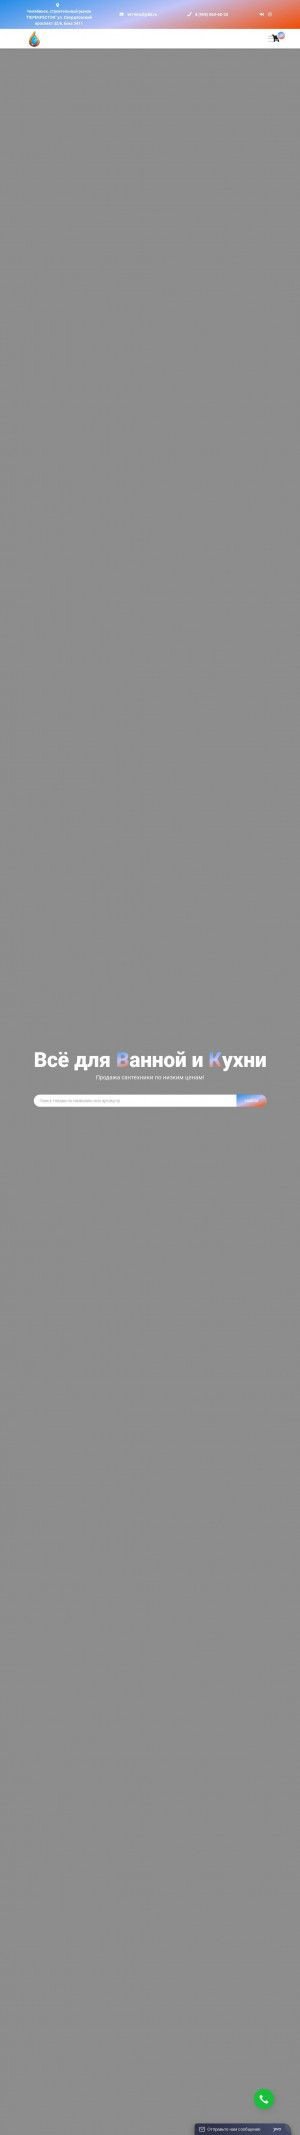 Предпросмотр для vk74.ru — Все для Ванной и Кухни